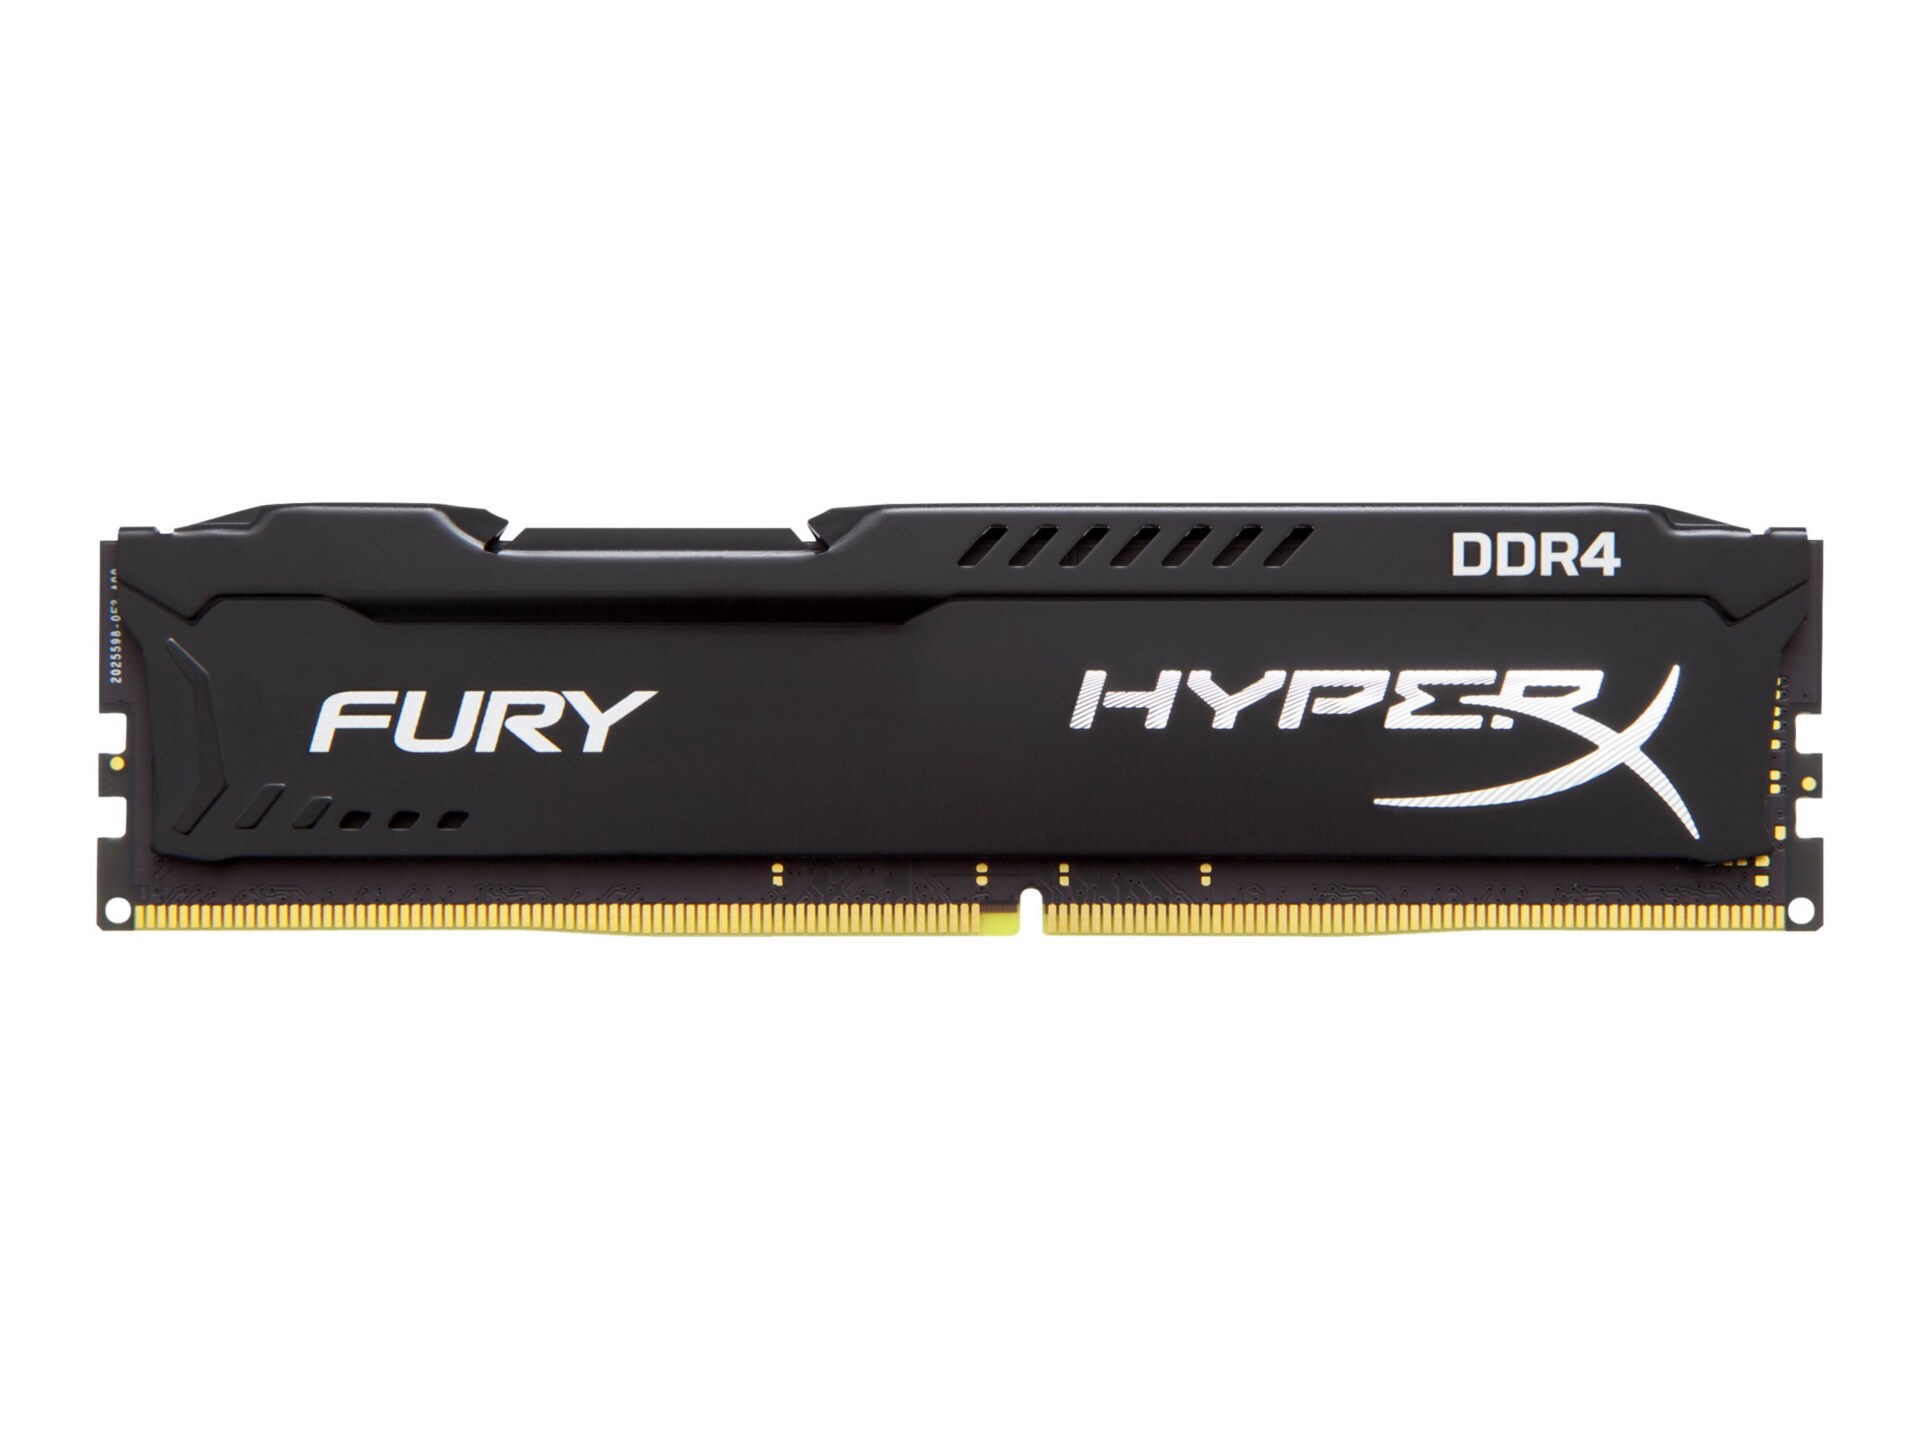 HyperX FURY - DDR4 - 4 GB - DIMM 288-pin - unbuffered